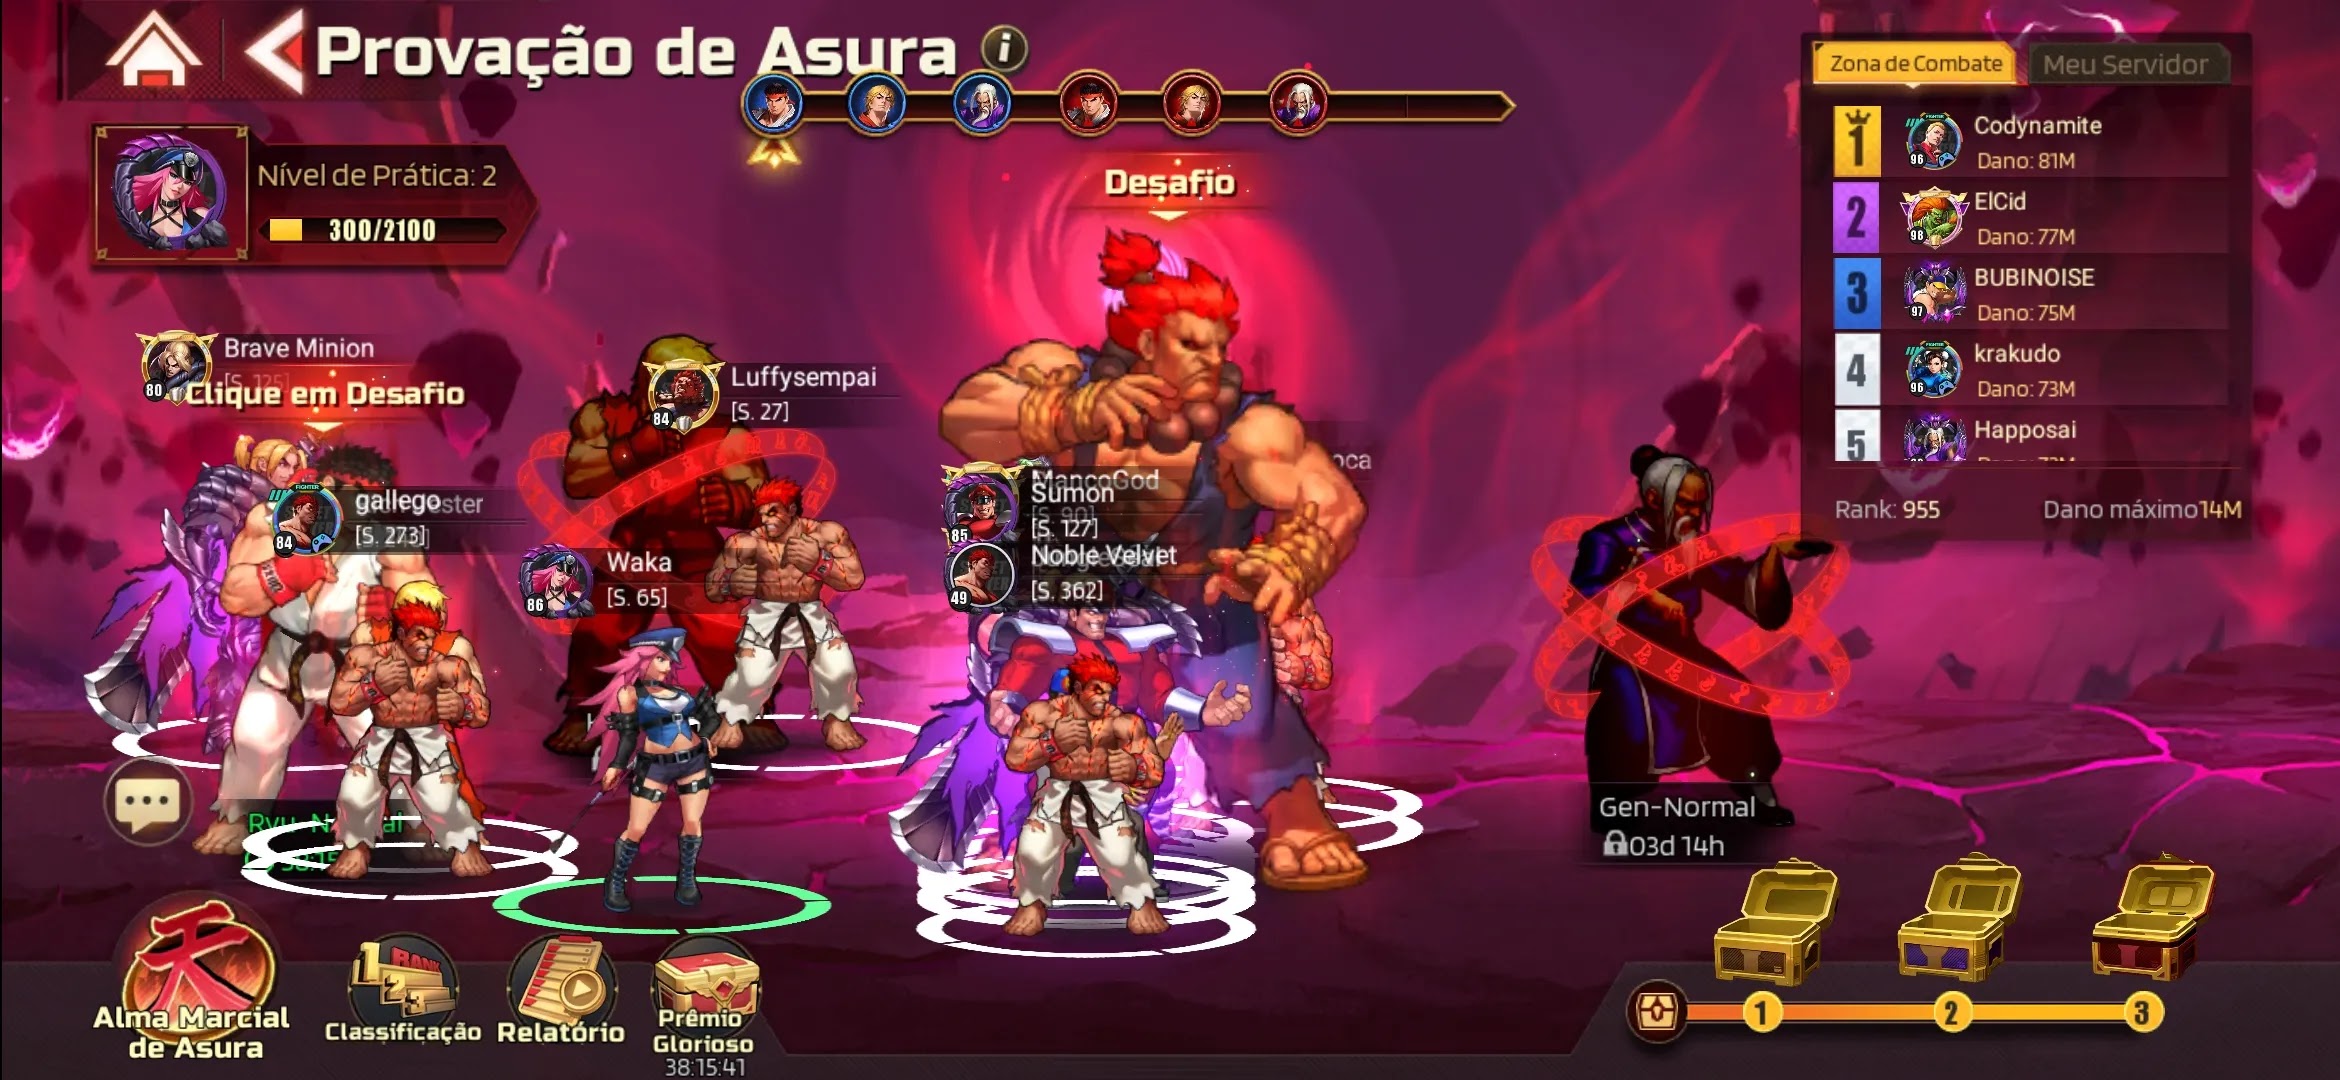 Street Fighter Duel: tudo sobre o evento e a chegada de Akuma